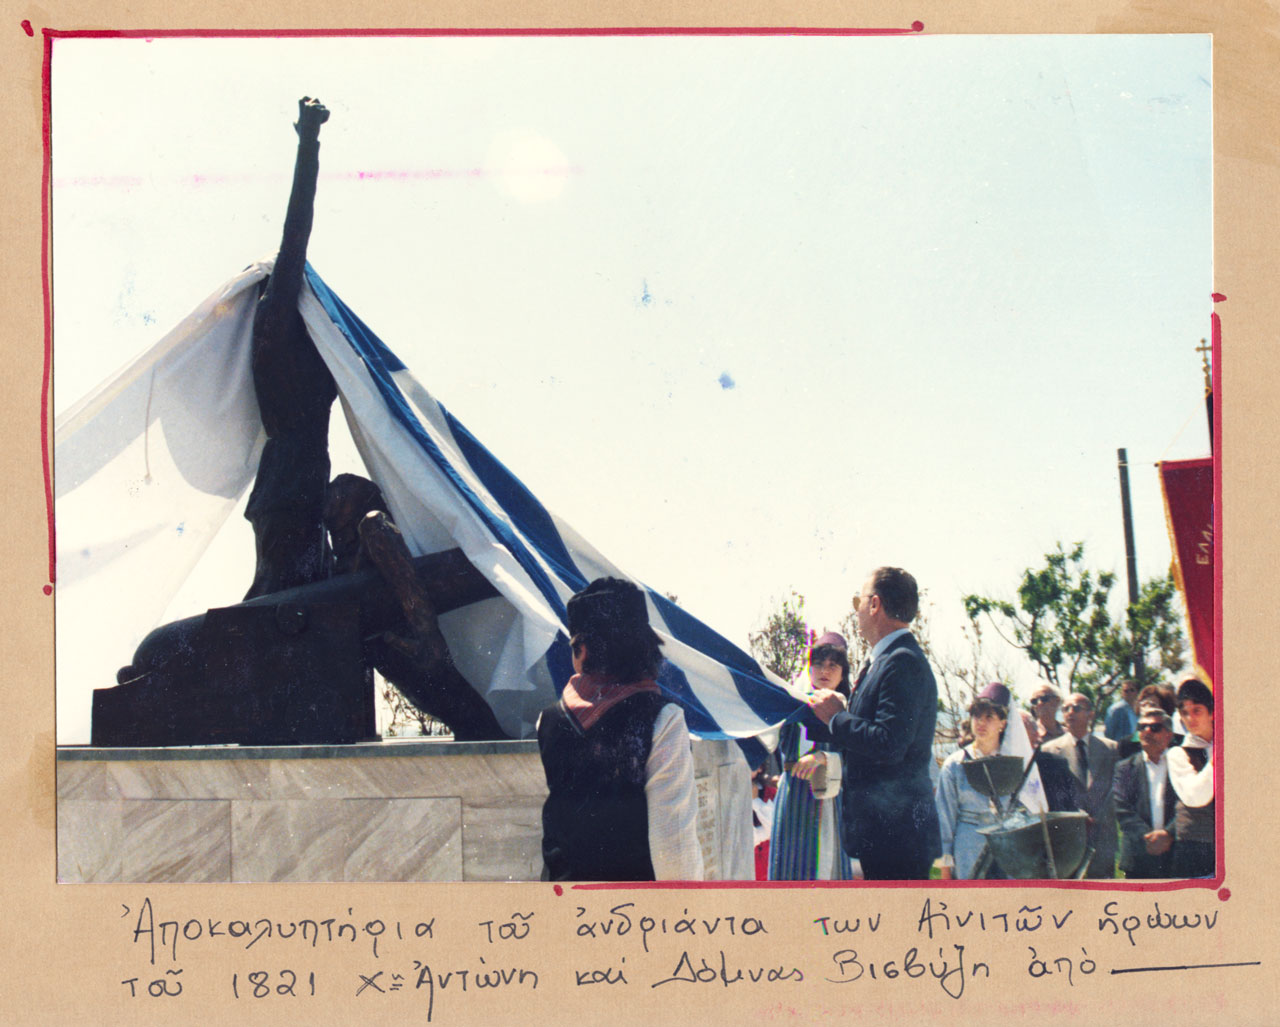 Το άγαλμα των Βισβίζηδων αποκαλύπτεται από τον δήμαρχο κ. Τάσο Σουλακάκη (24/5/1987)